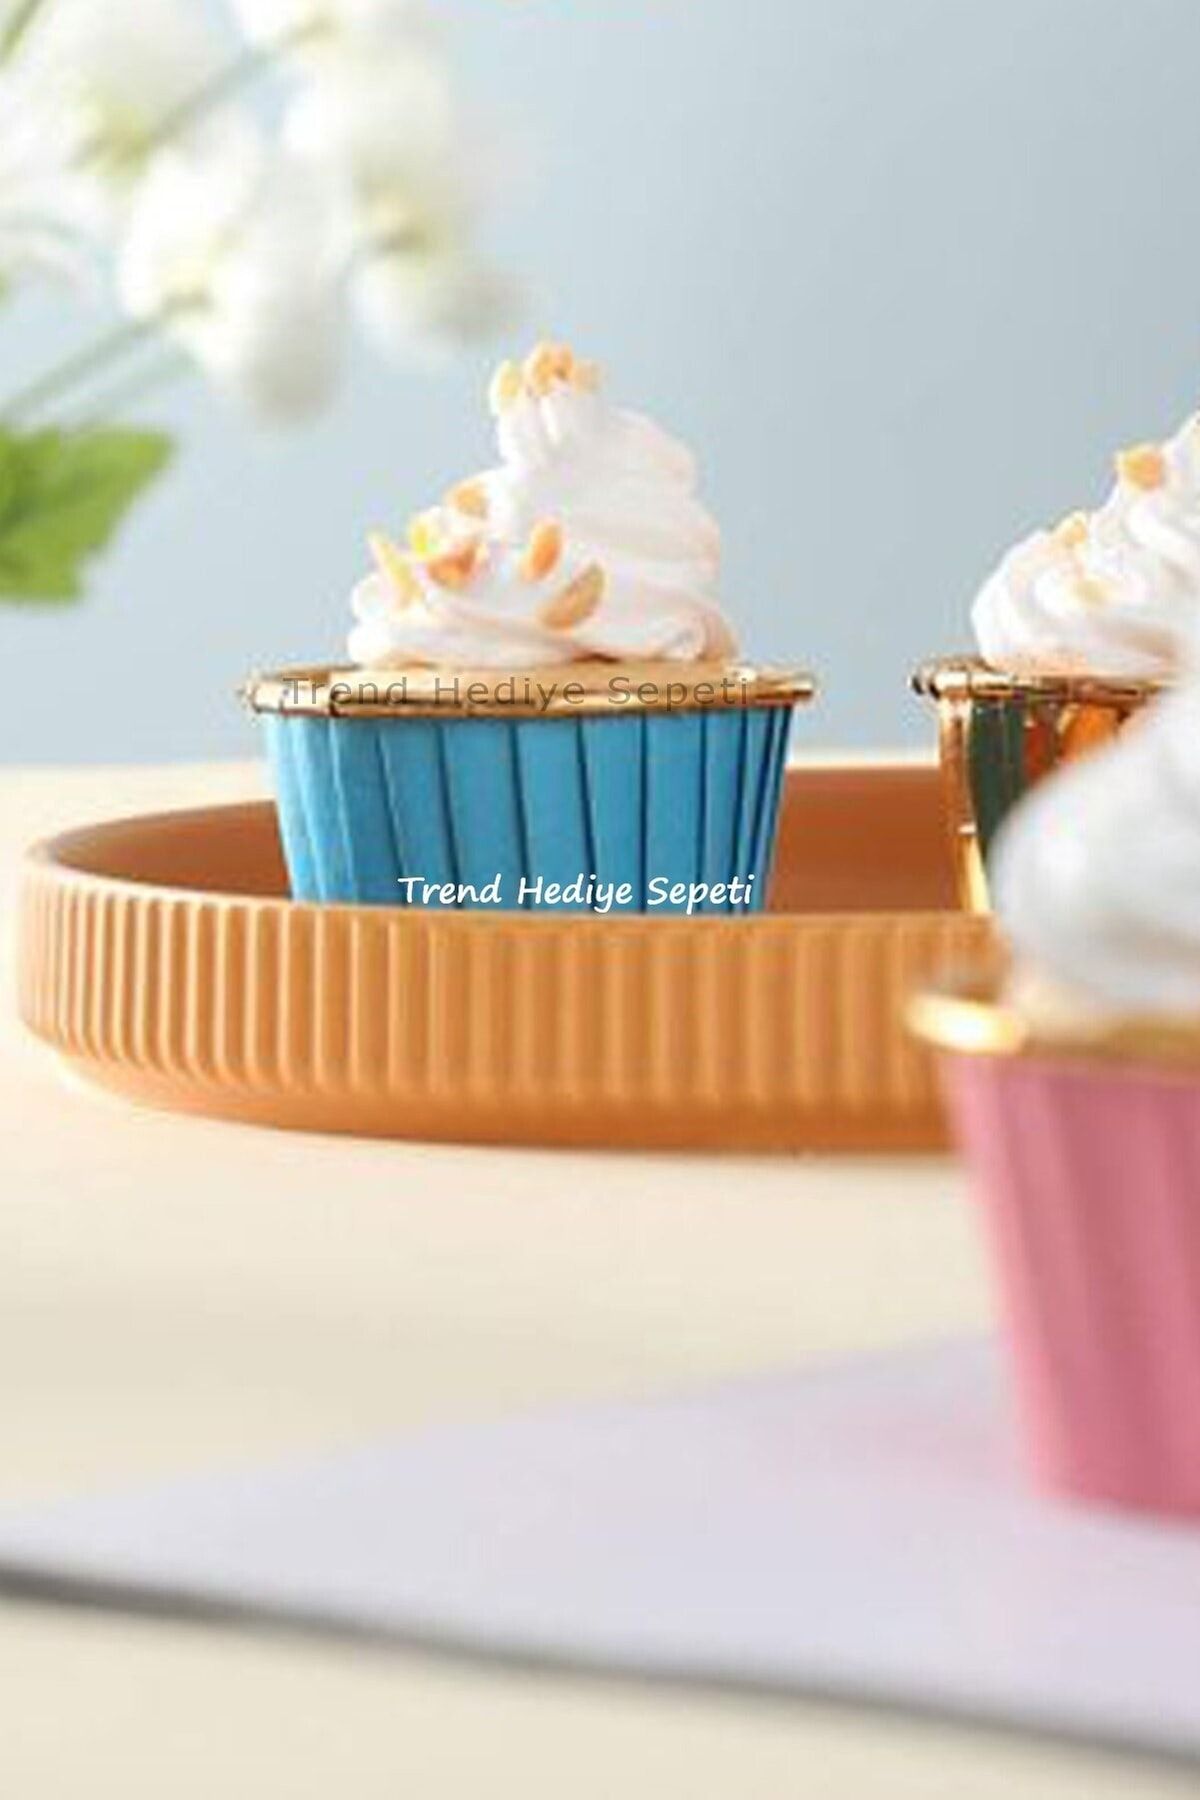 Trend Hediye Sepeti 25'li Mavi Gold Muffin Kek Kapsülü Cupcake Kalıbı